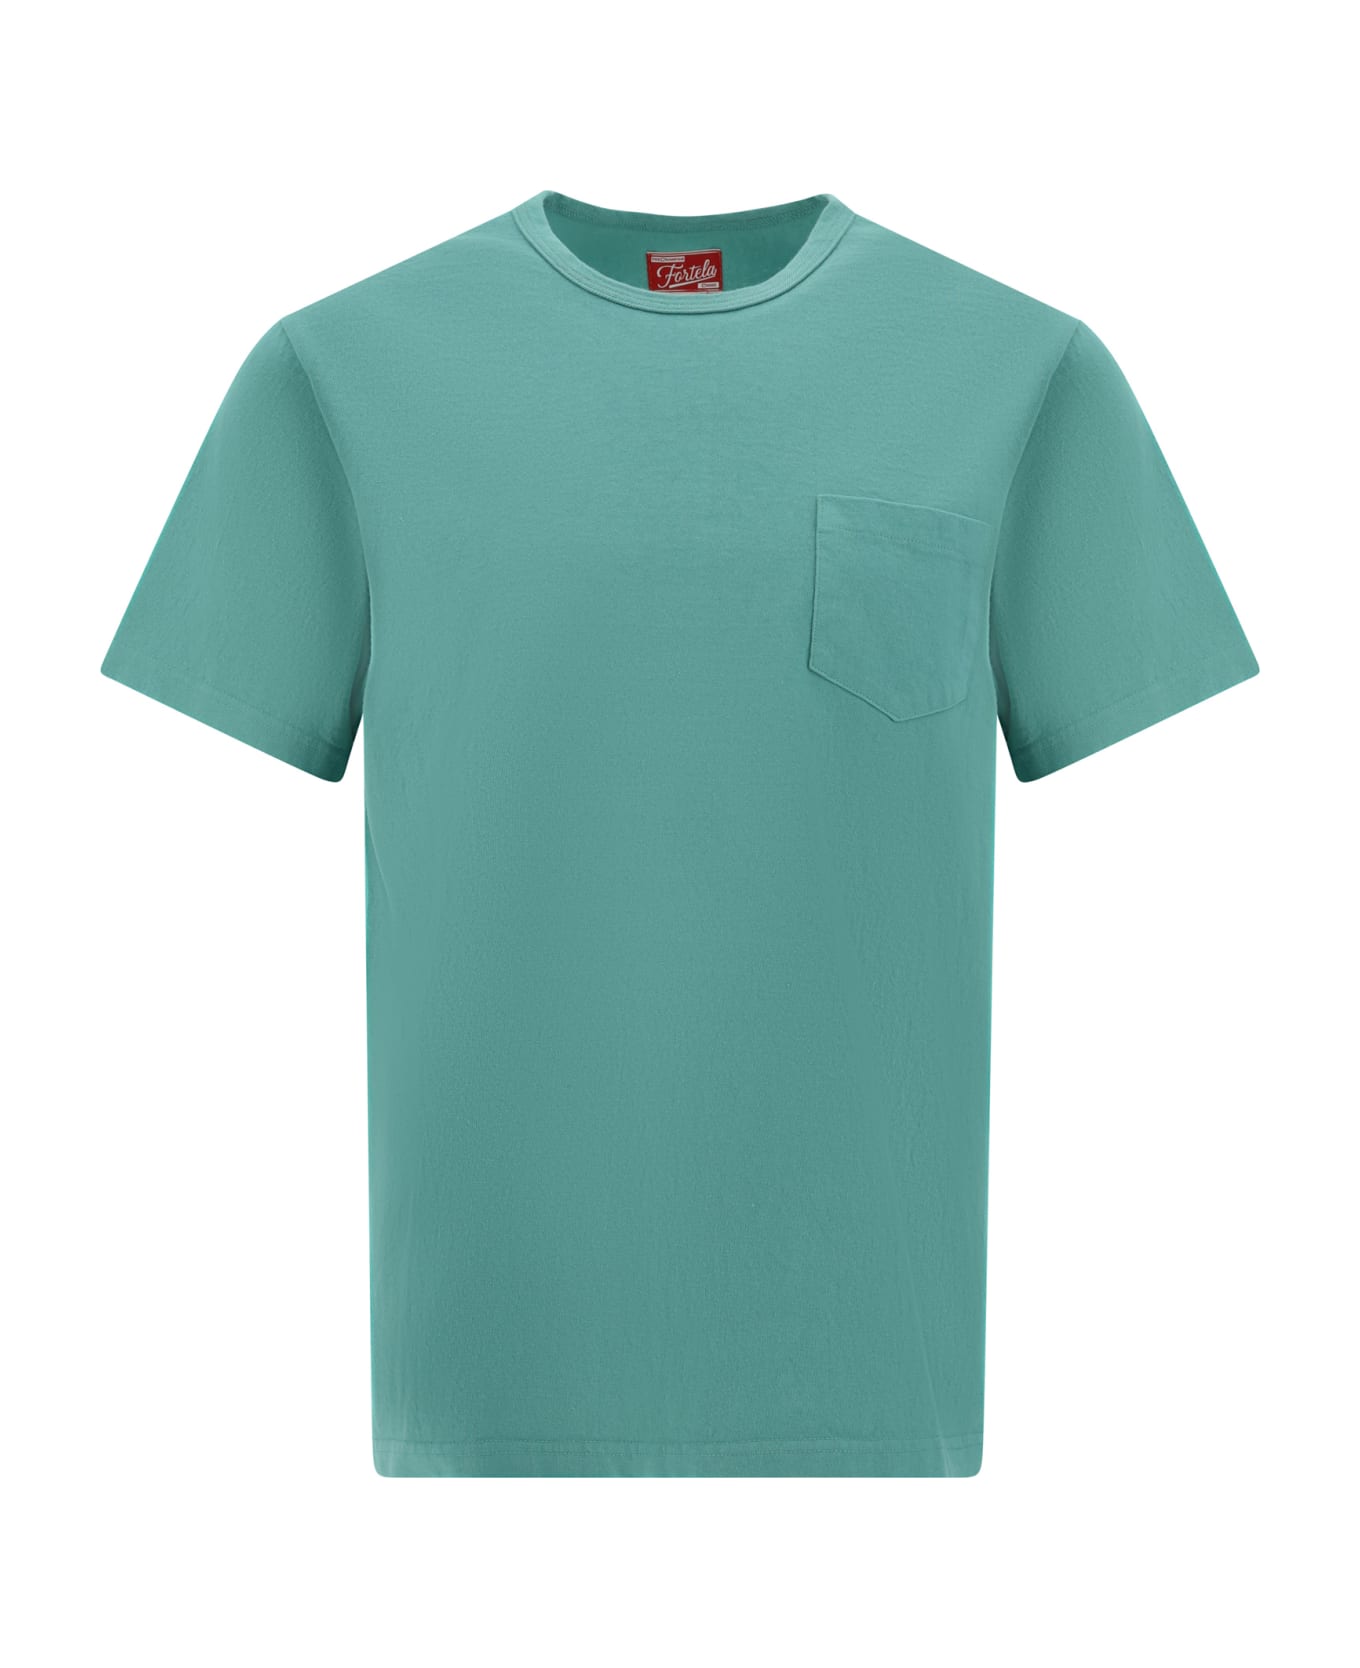 Fortela T-shirt - Verde Acqua